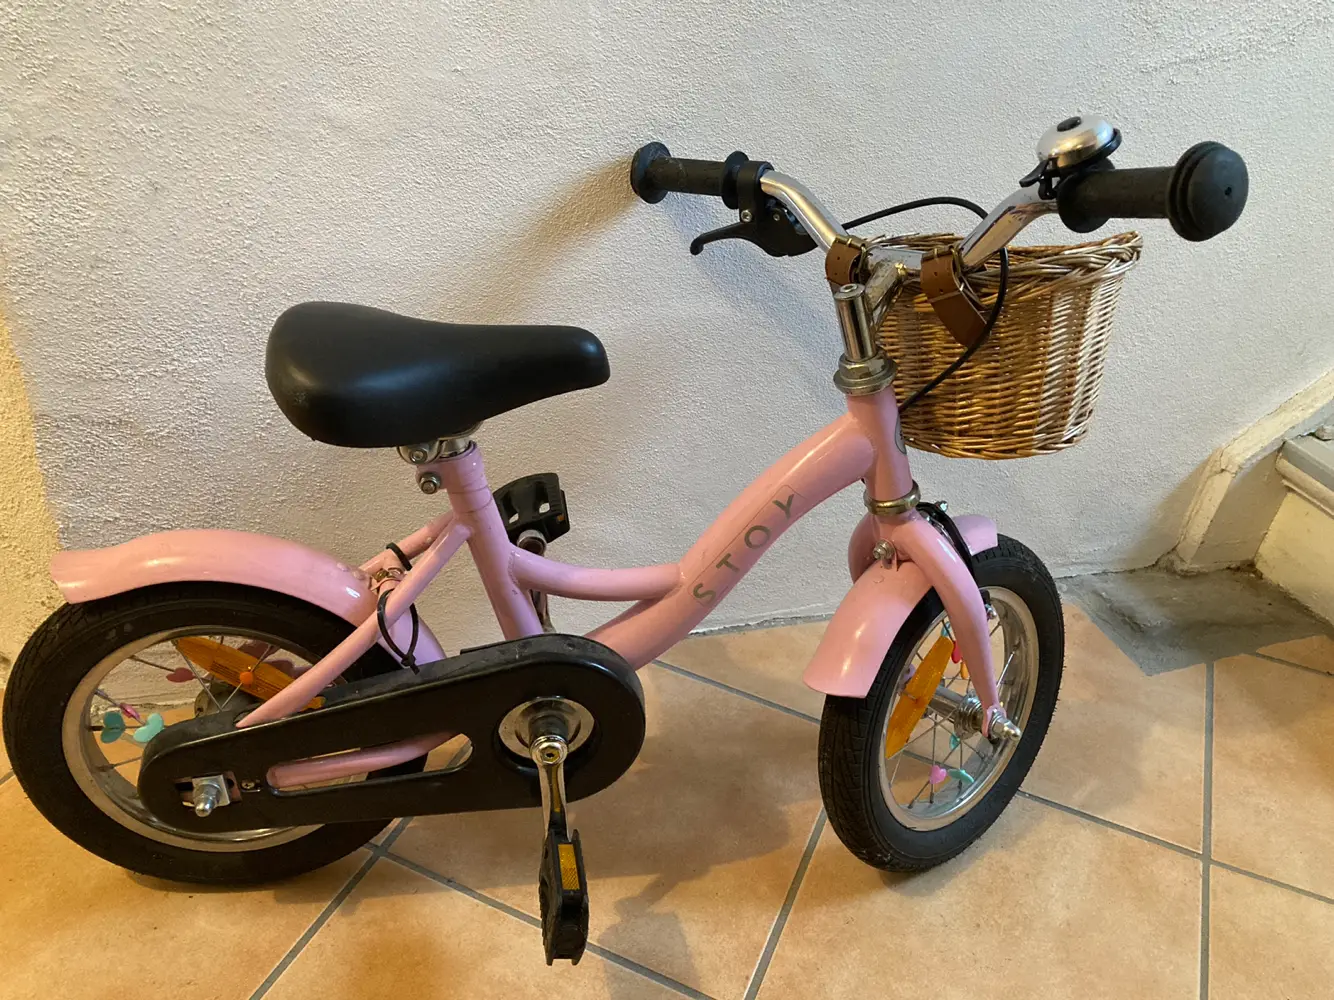 entanglement tackle hykleri Køb Stoy 12” Cykel i størrelse 12" af Karina på Reshopper · Shop secondhand  til børn, mor og bolig